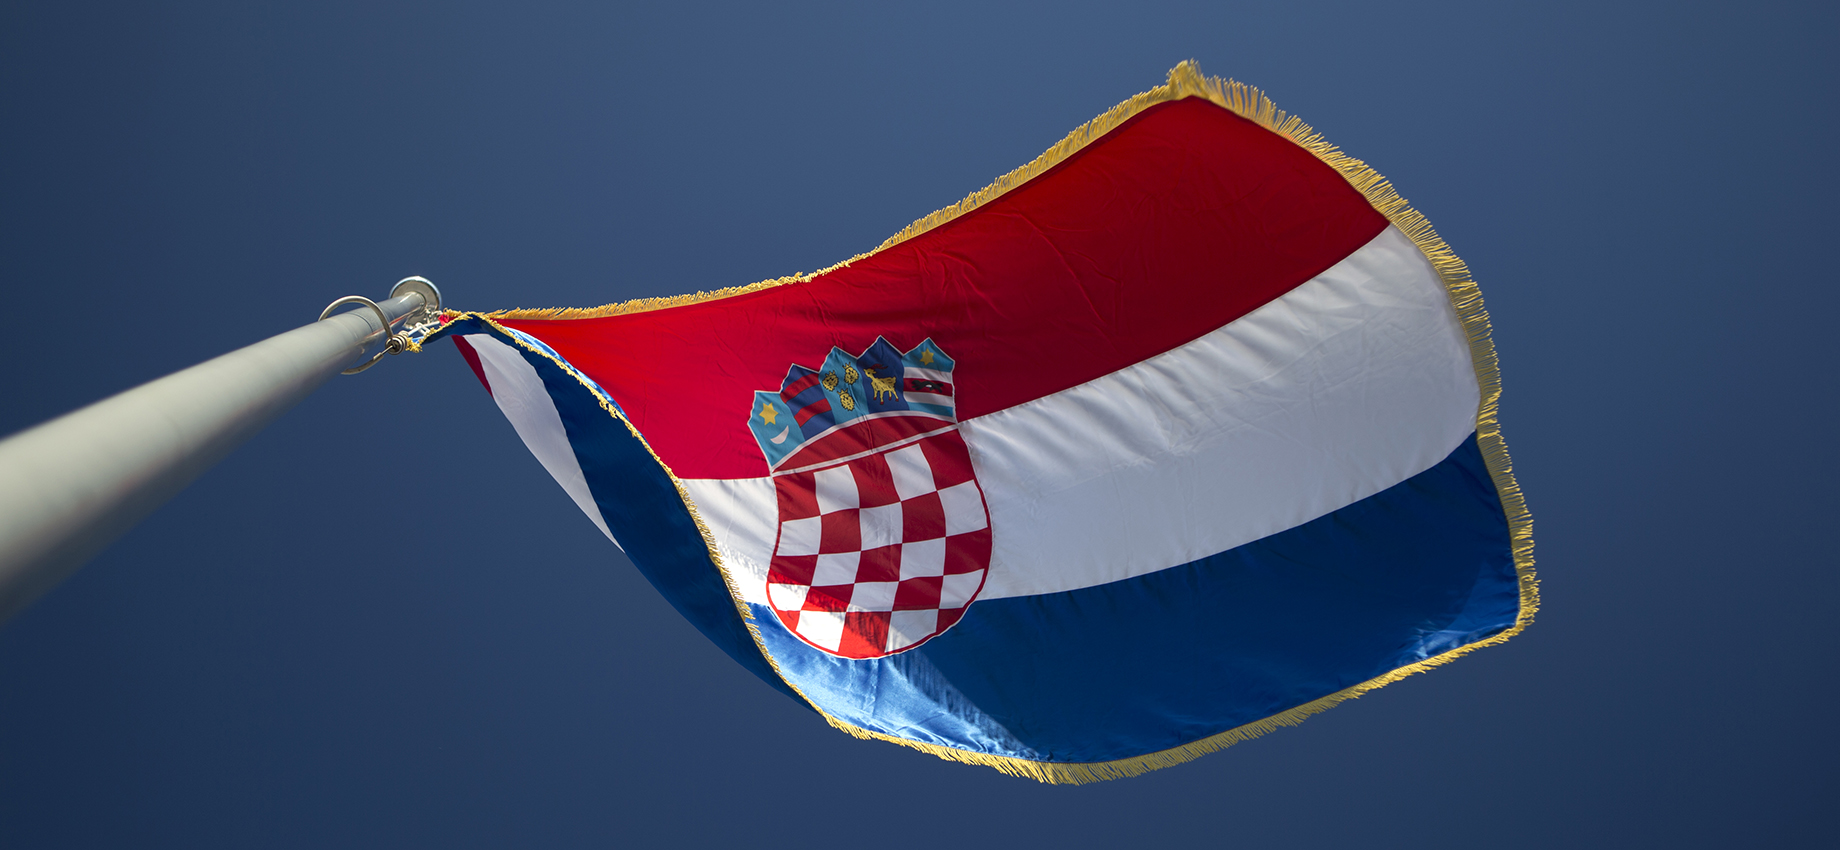 Хорватия перестанет принимать документы на туристические визы